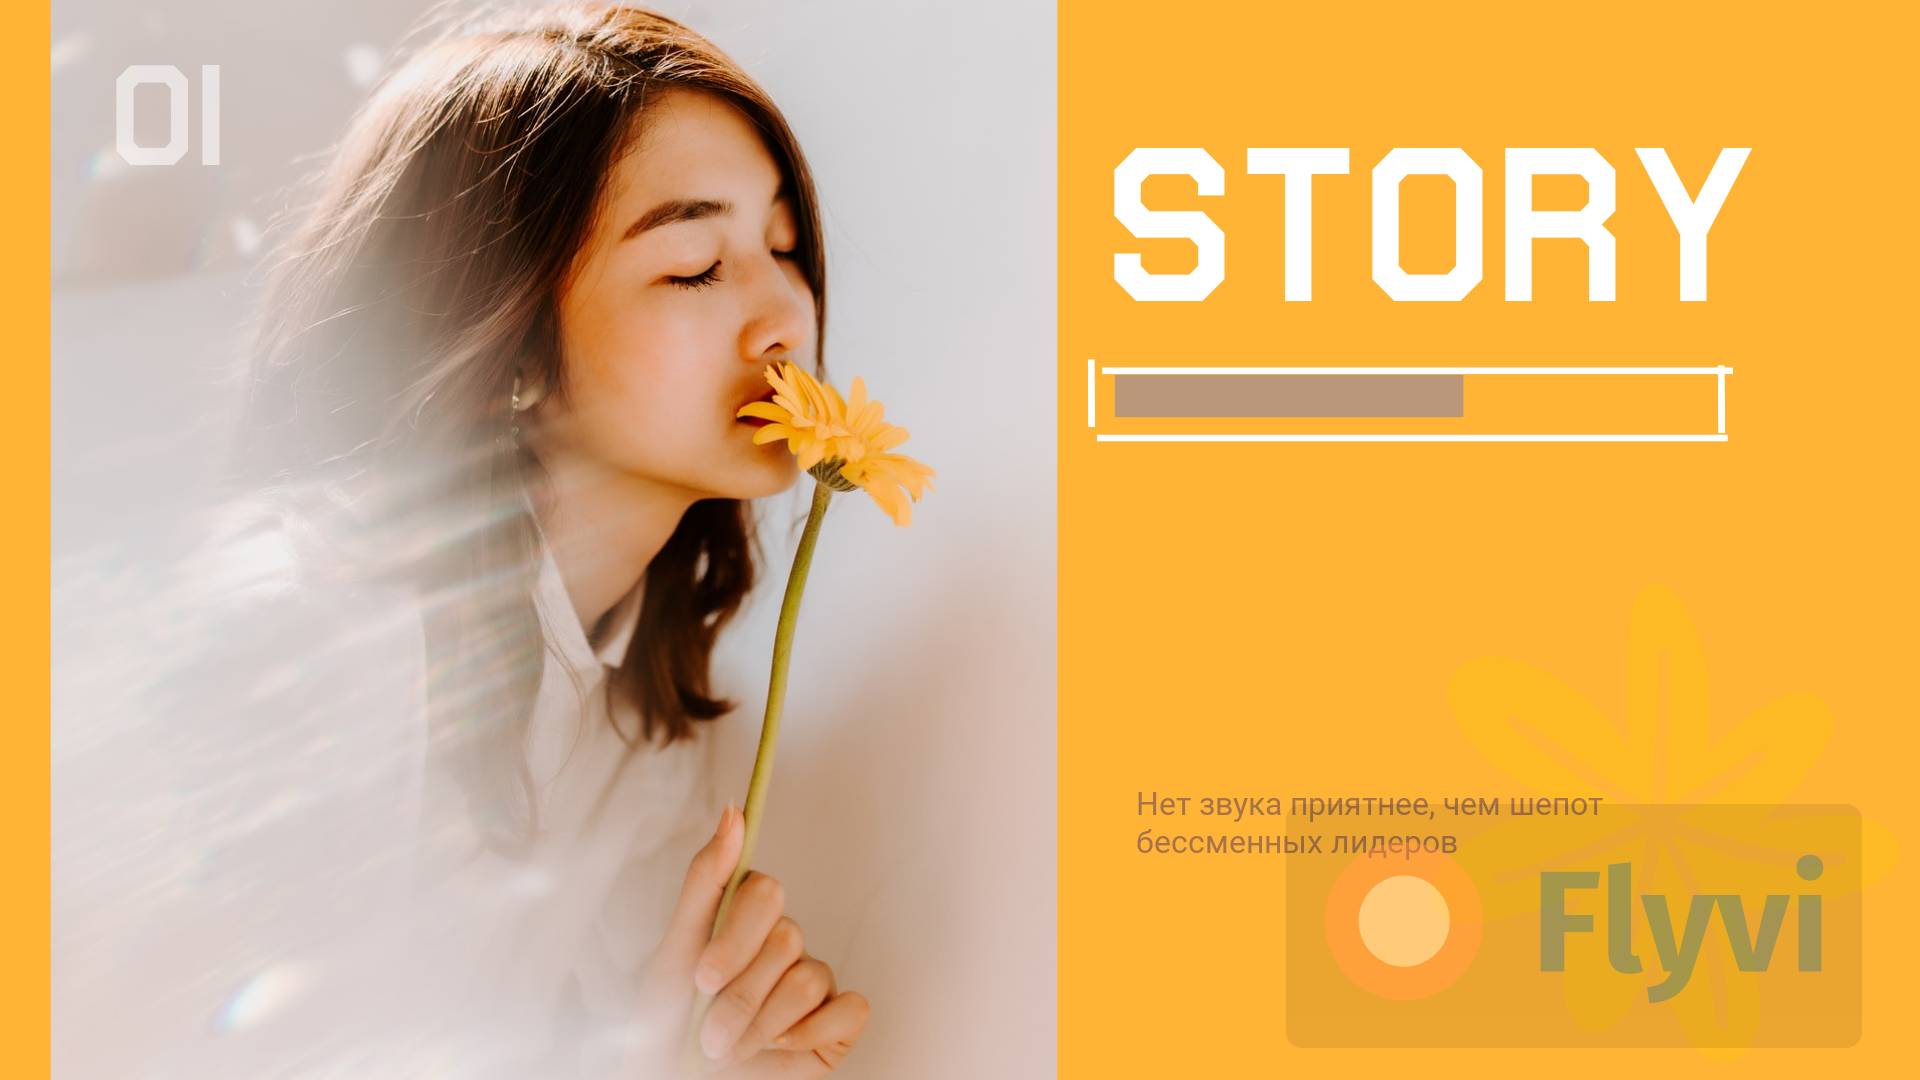 Воздушный весенний пост для соцсетей с ярко-желтым фоном и девушкой брюнеткой с желтым цветком в руках